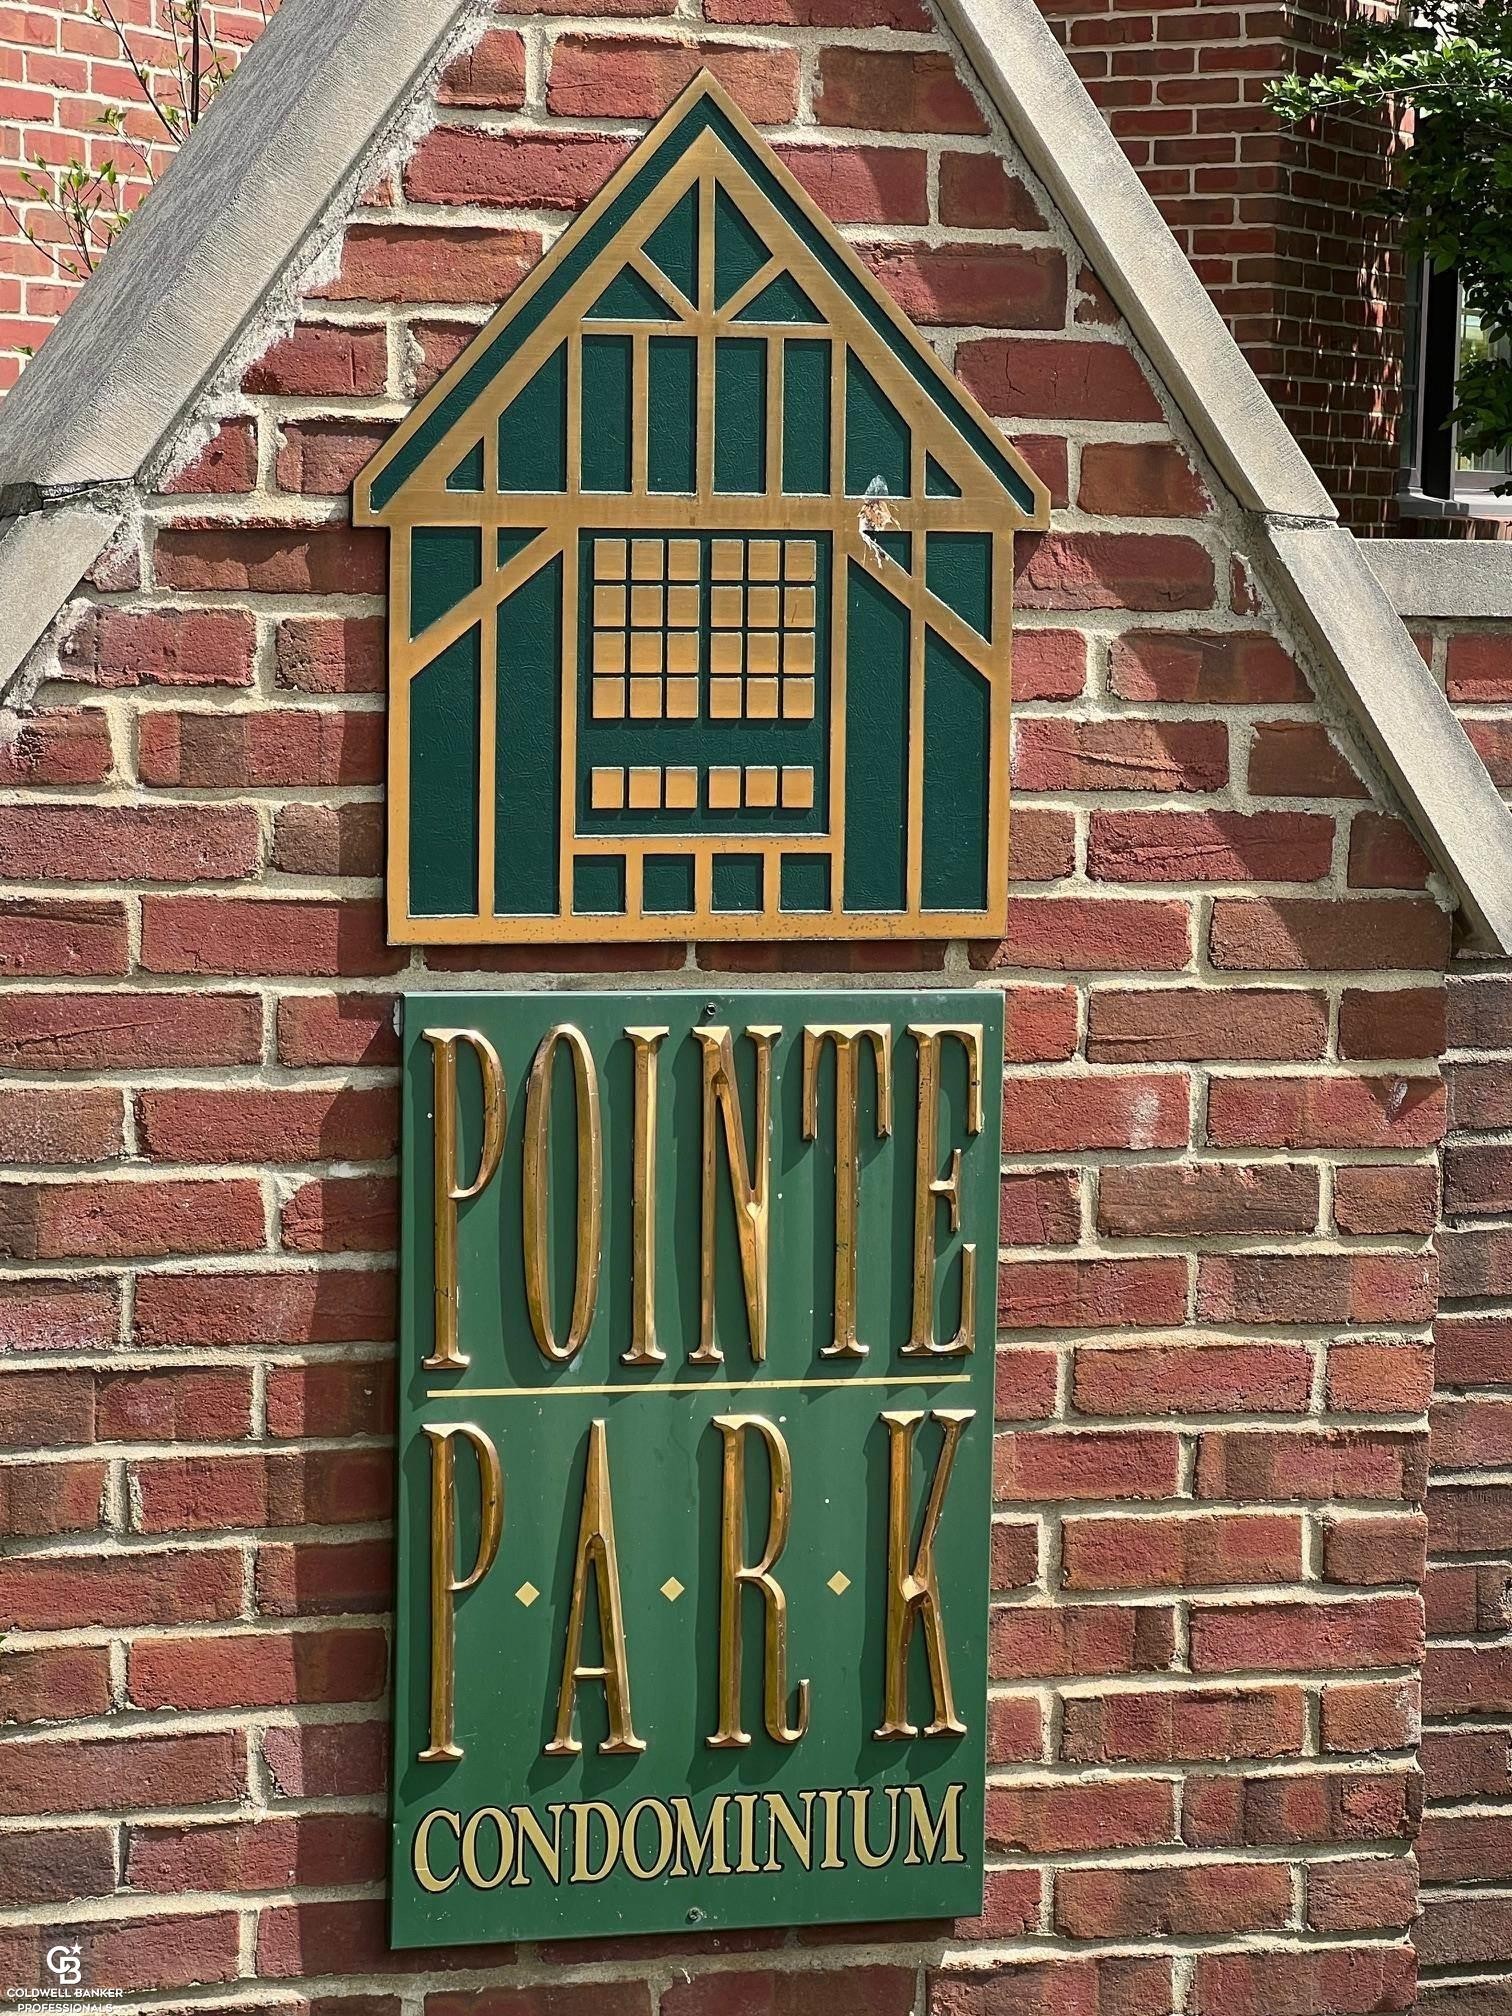 1. 24 Pointe Park Place